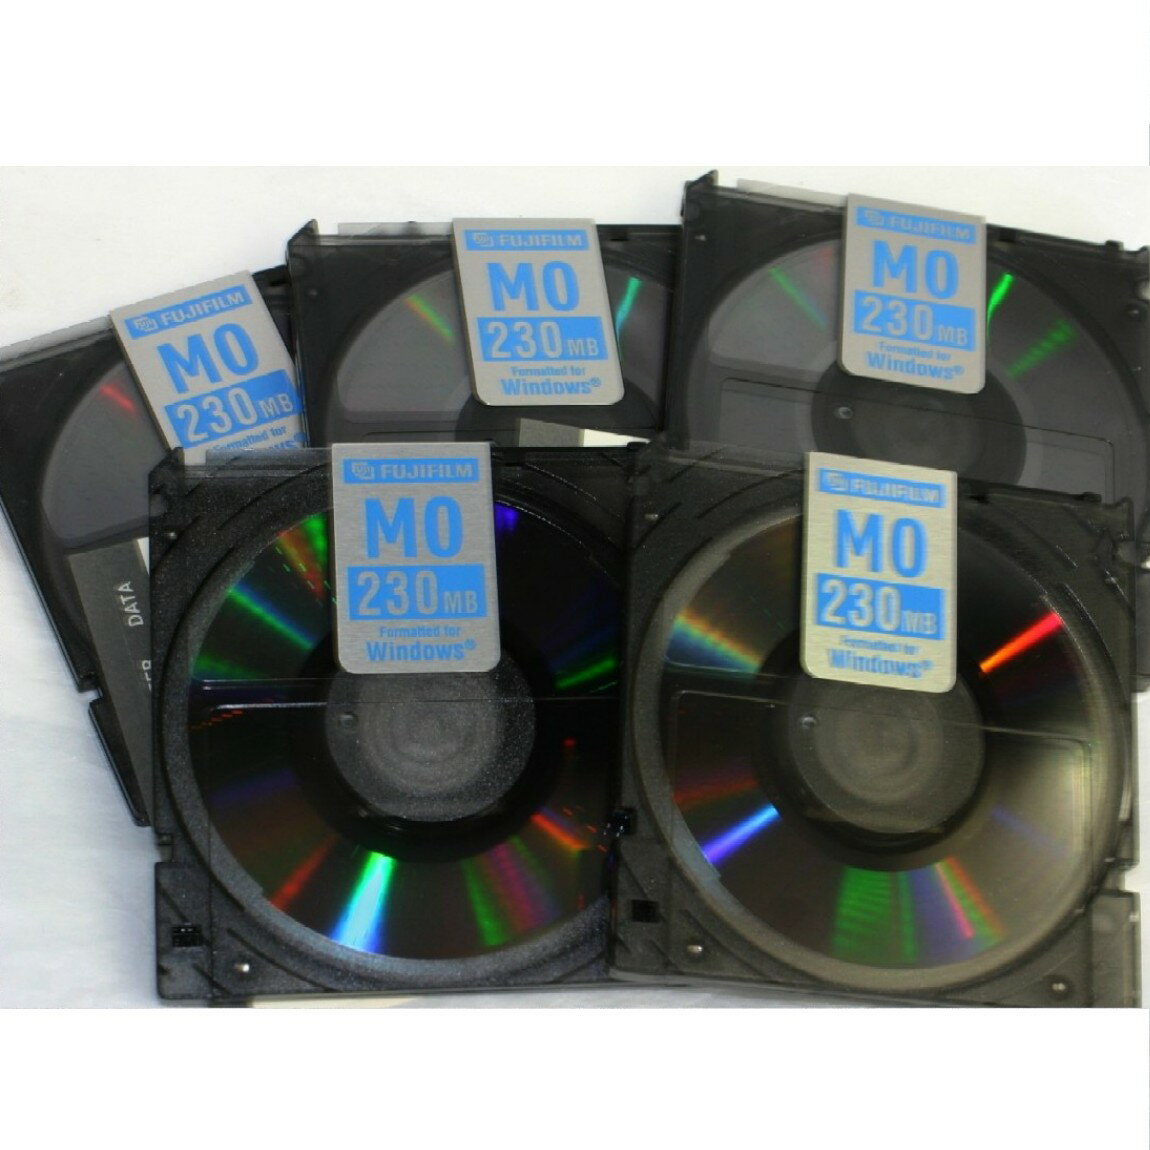 【中古】未使用品フジフィルムのMOドライブ用ディスク230MBの5枚組み ○J13-33-3